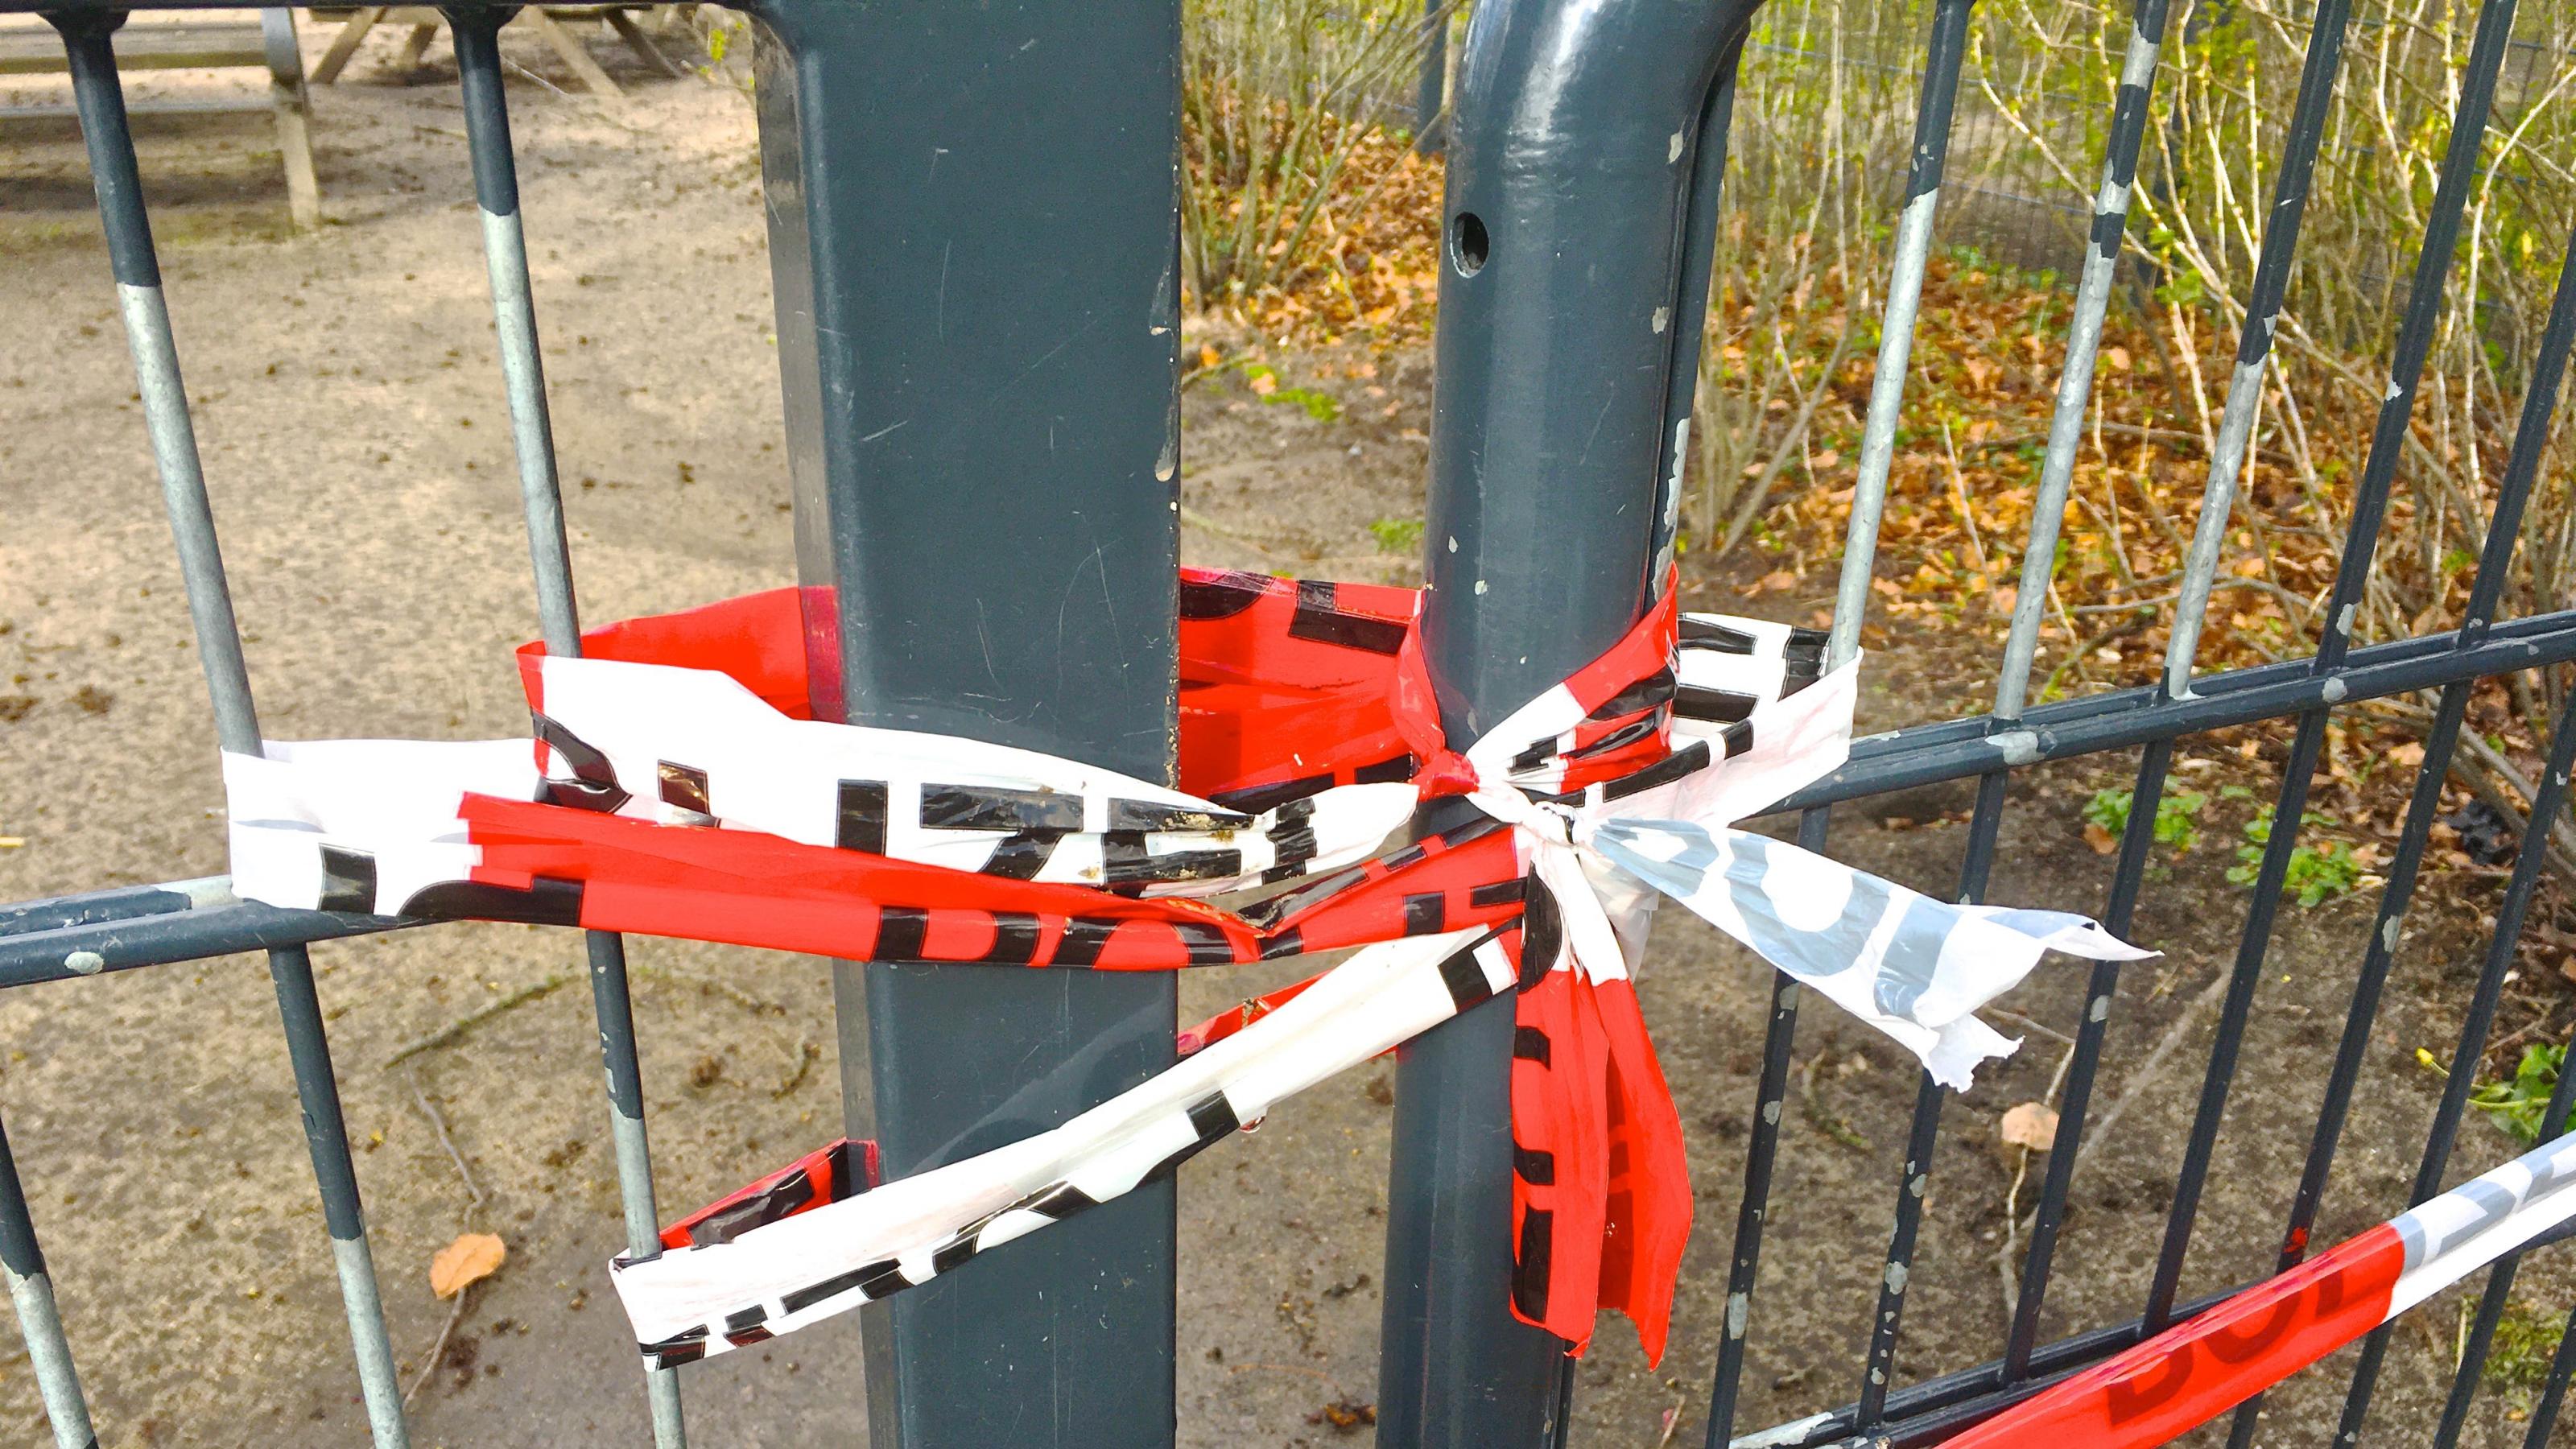 Die Teile eines Metalltors sind mehrfach umwickelt und dann verknotet, um den Durchgang zu sperren. Gesehen in einem Hamburger Park.